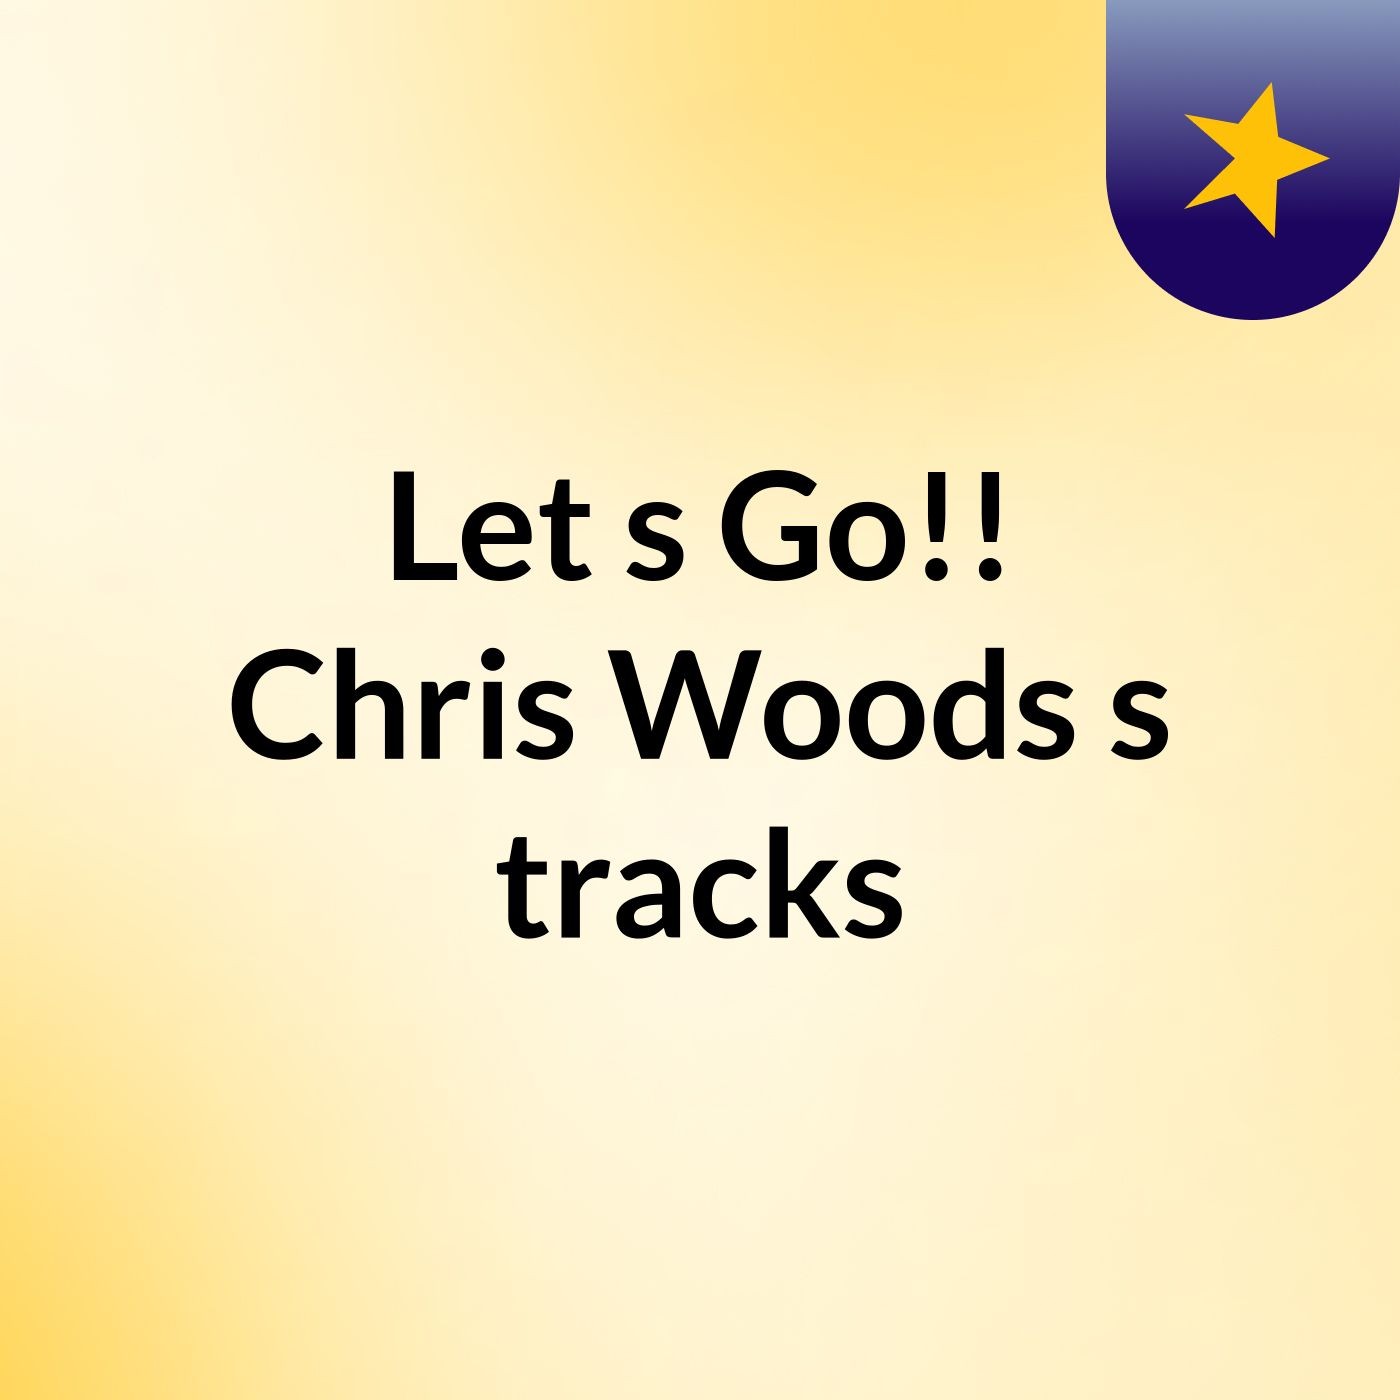 Let's Go!! Chris Woods's tracks